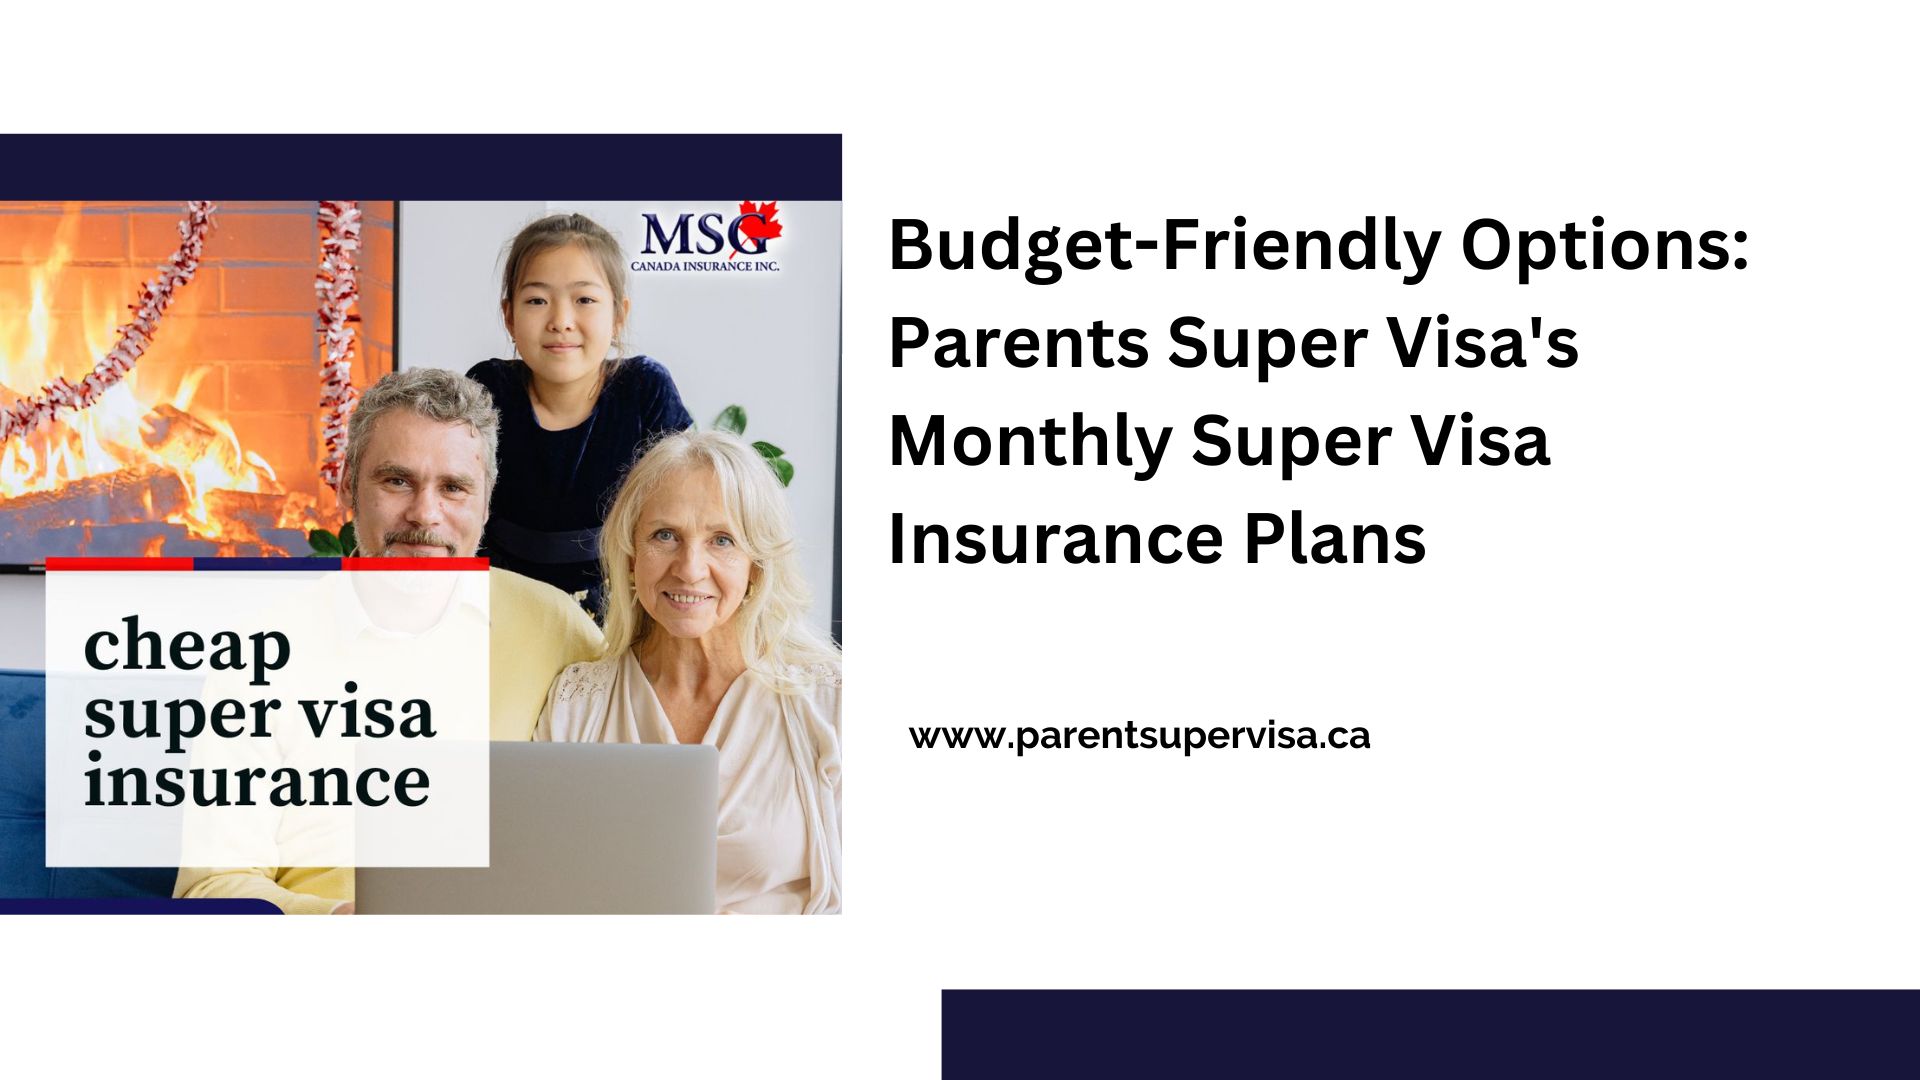 Budget-Friendly Options: Parents Super Visa’s Monthly Super Visa Insurance Plans